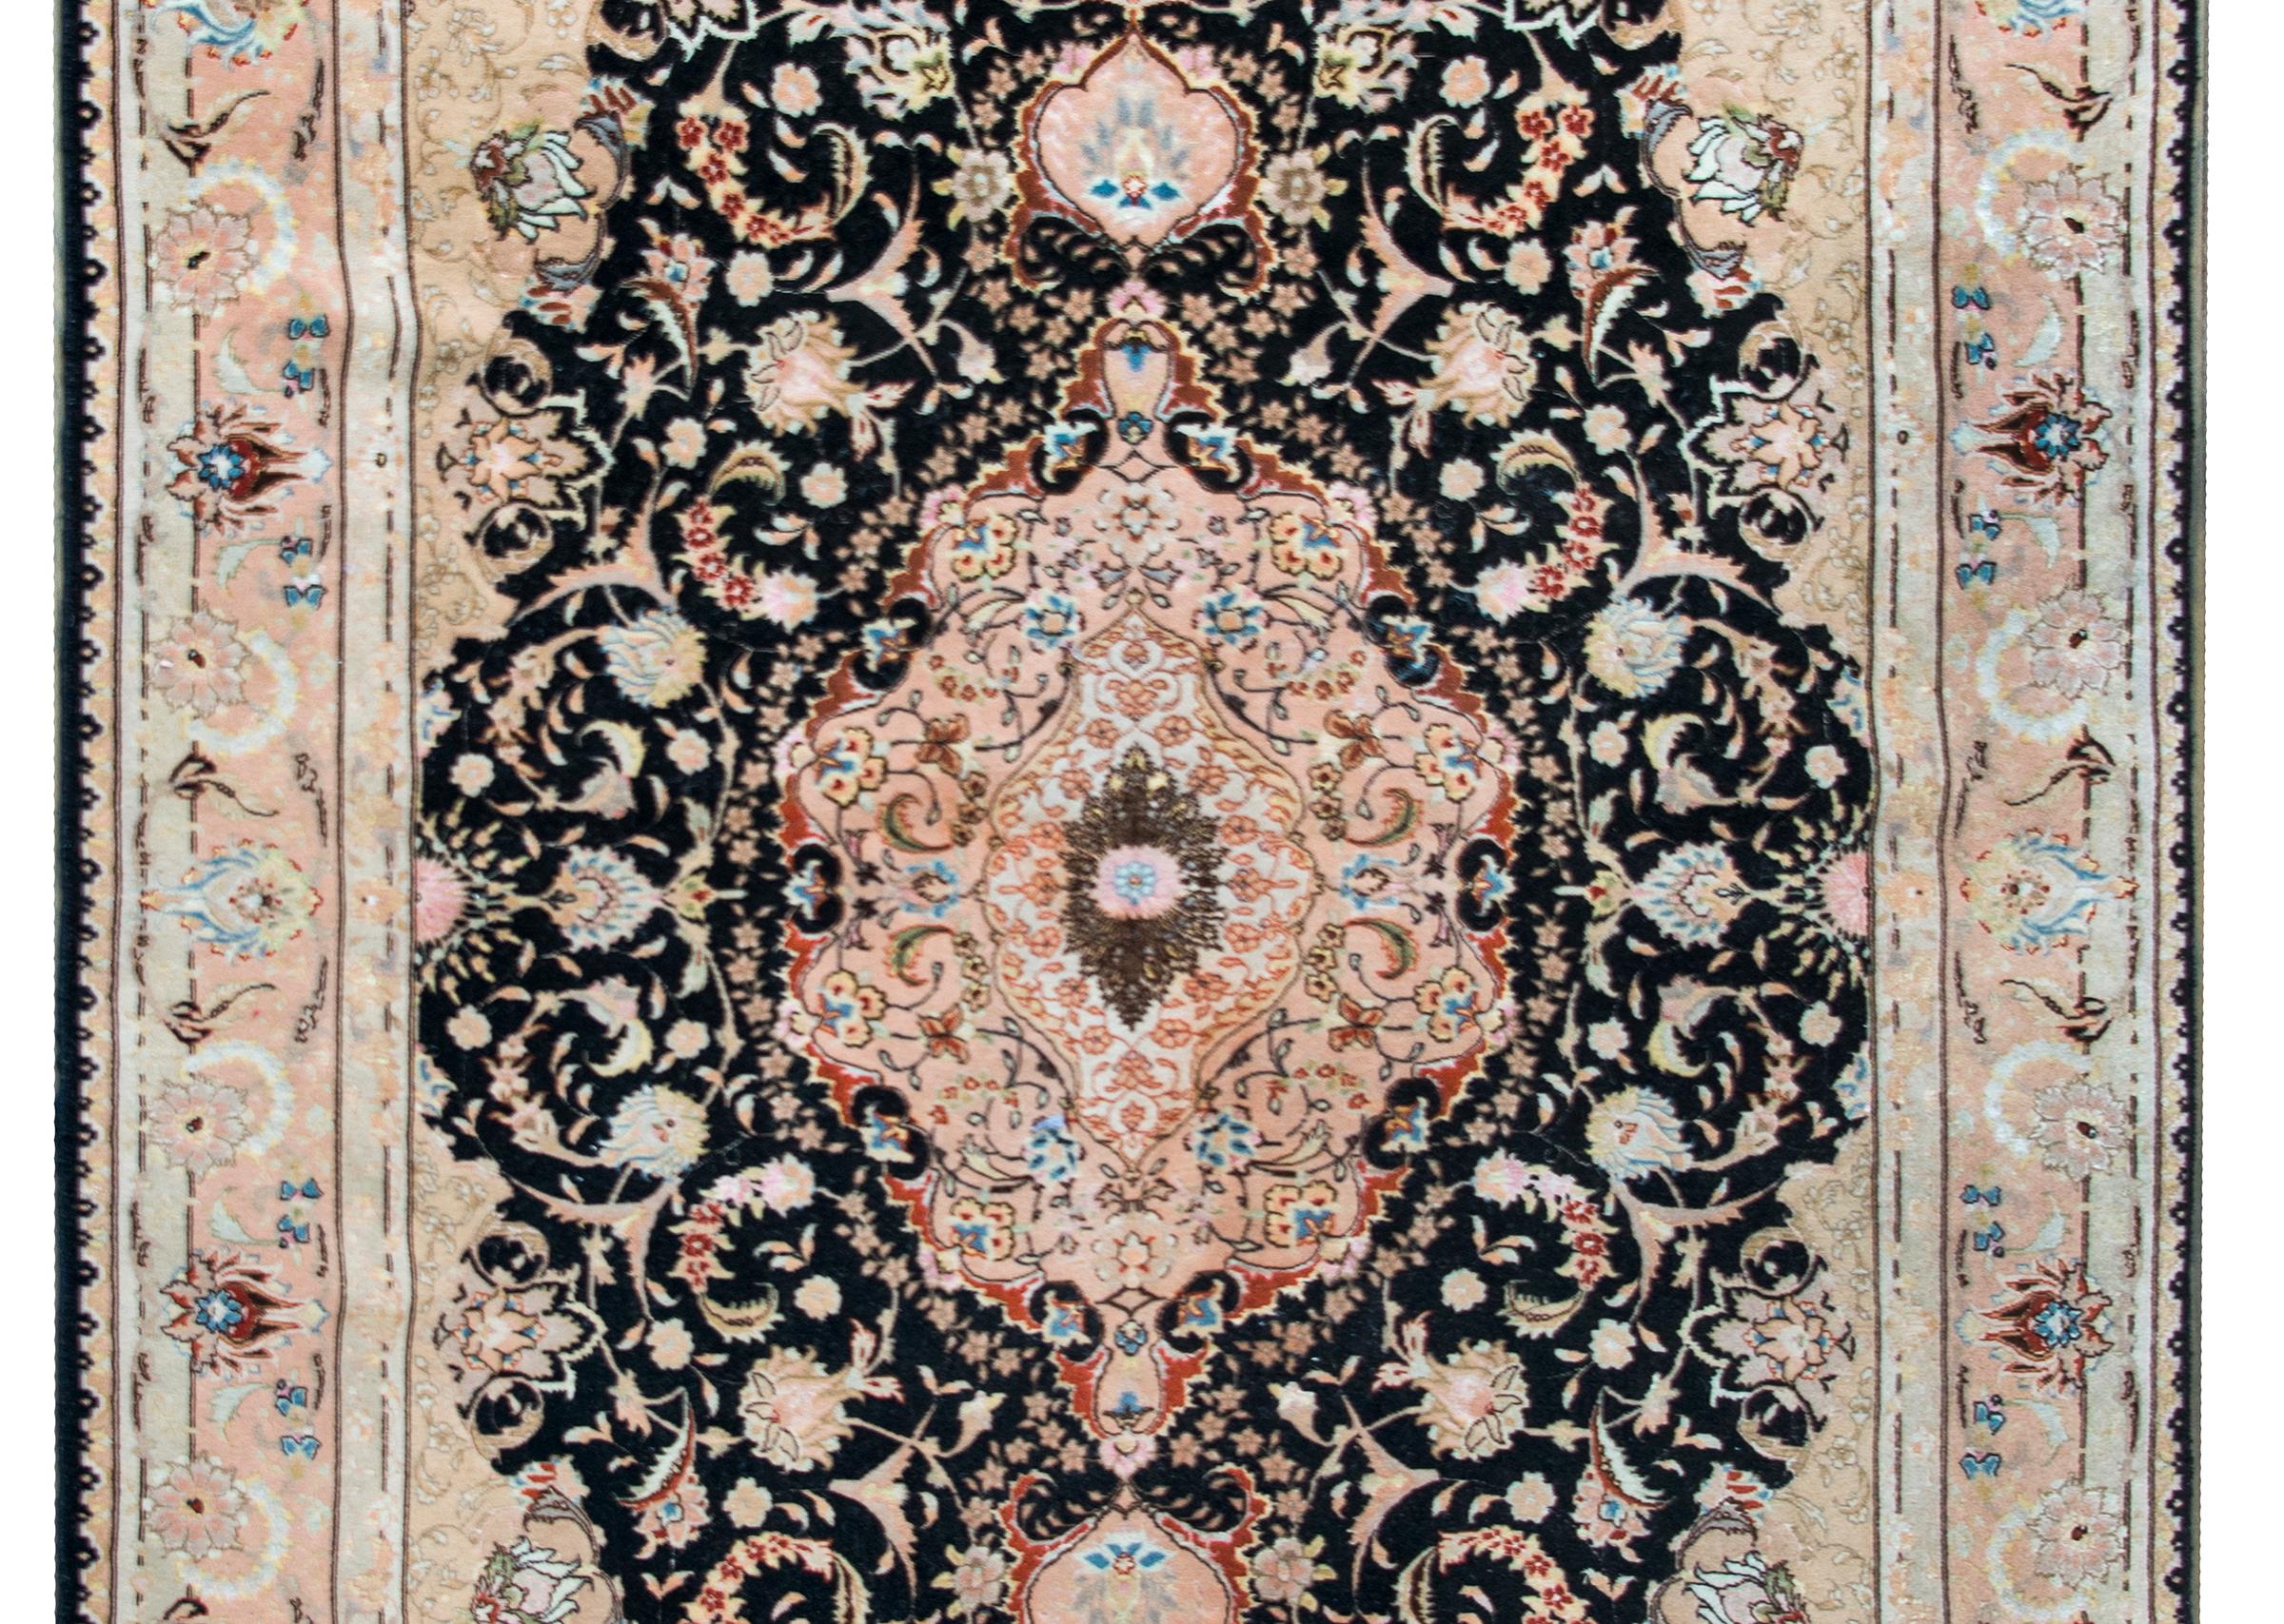 Un fantastique tapis Tabriz en soie et laine de la fin du XXe siècle, avec un grand médaillon floral central vivant au milieu de vignes en volutes et de fleurs stylisées, et entouré d'une large bordure à motifs floraux répétés.